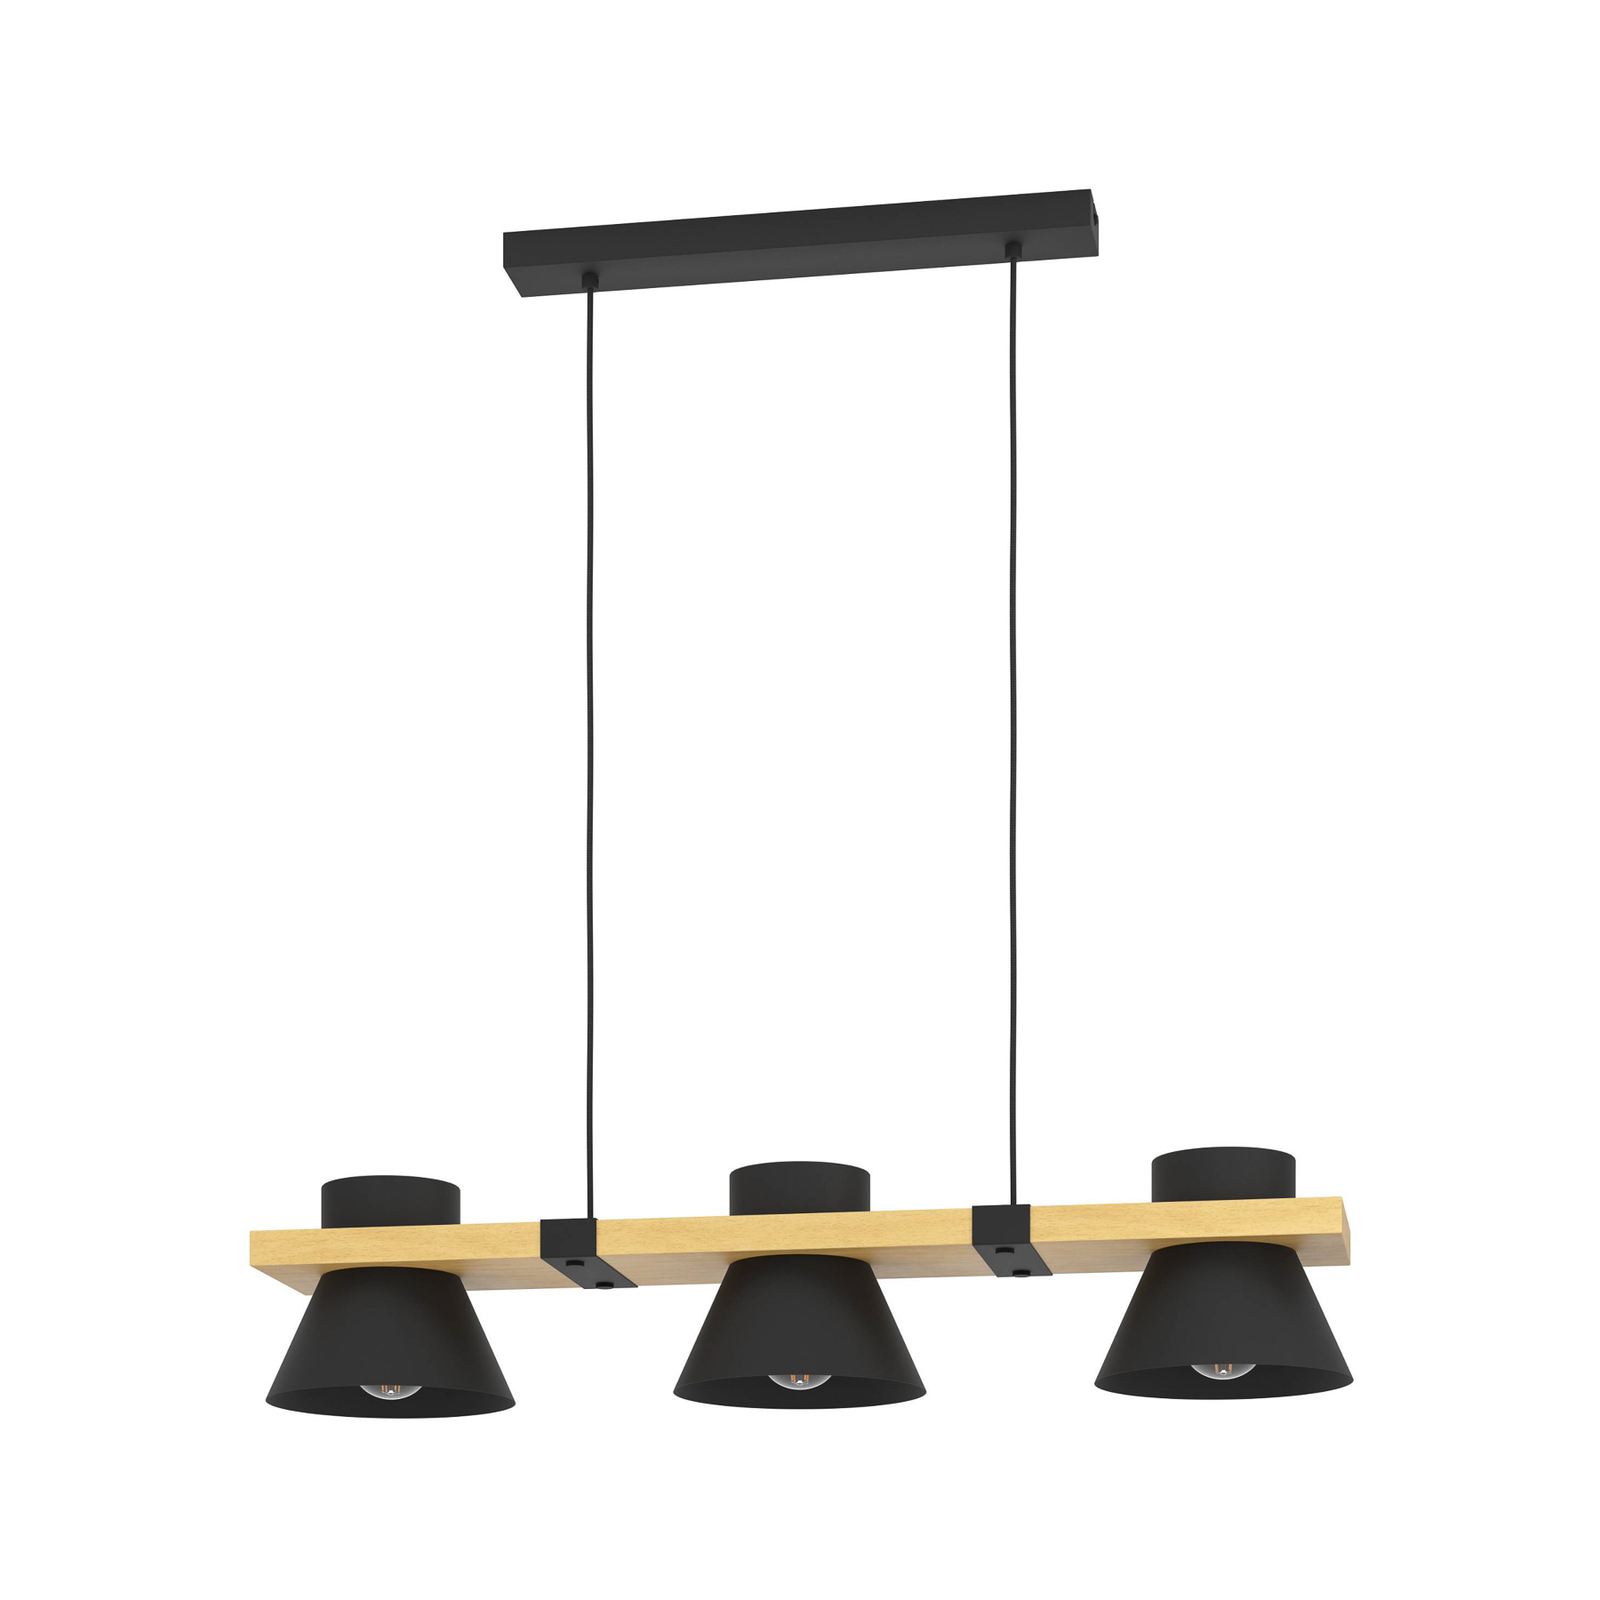 Maccles lampă suspendată negru cu lemn, 3 becuri